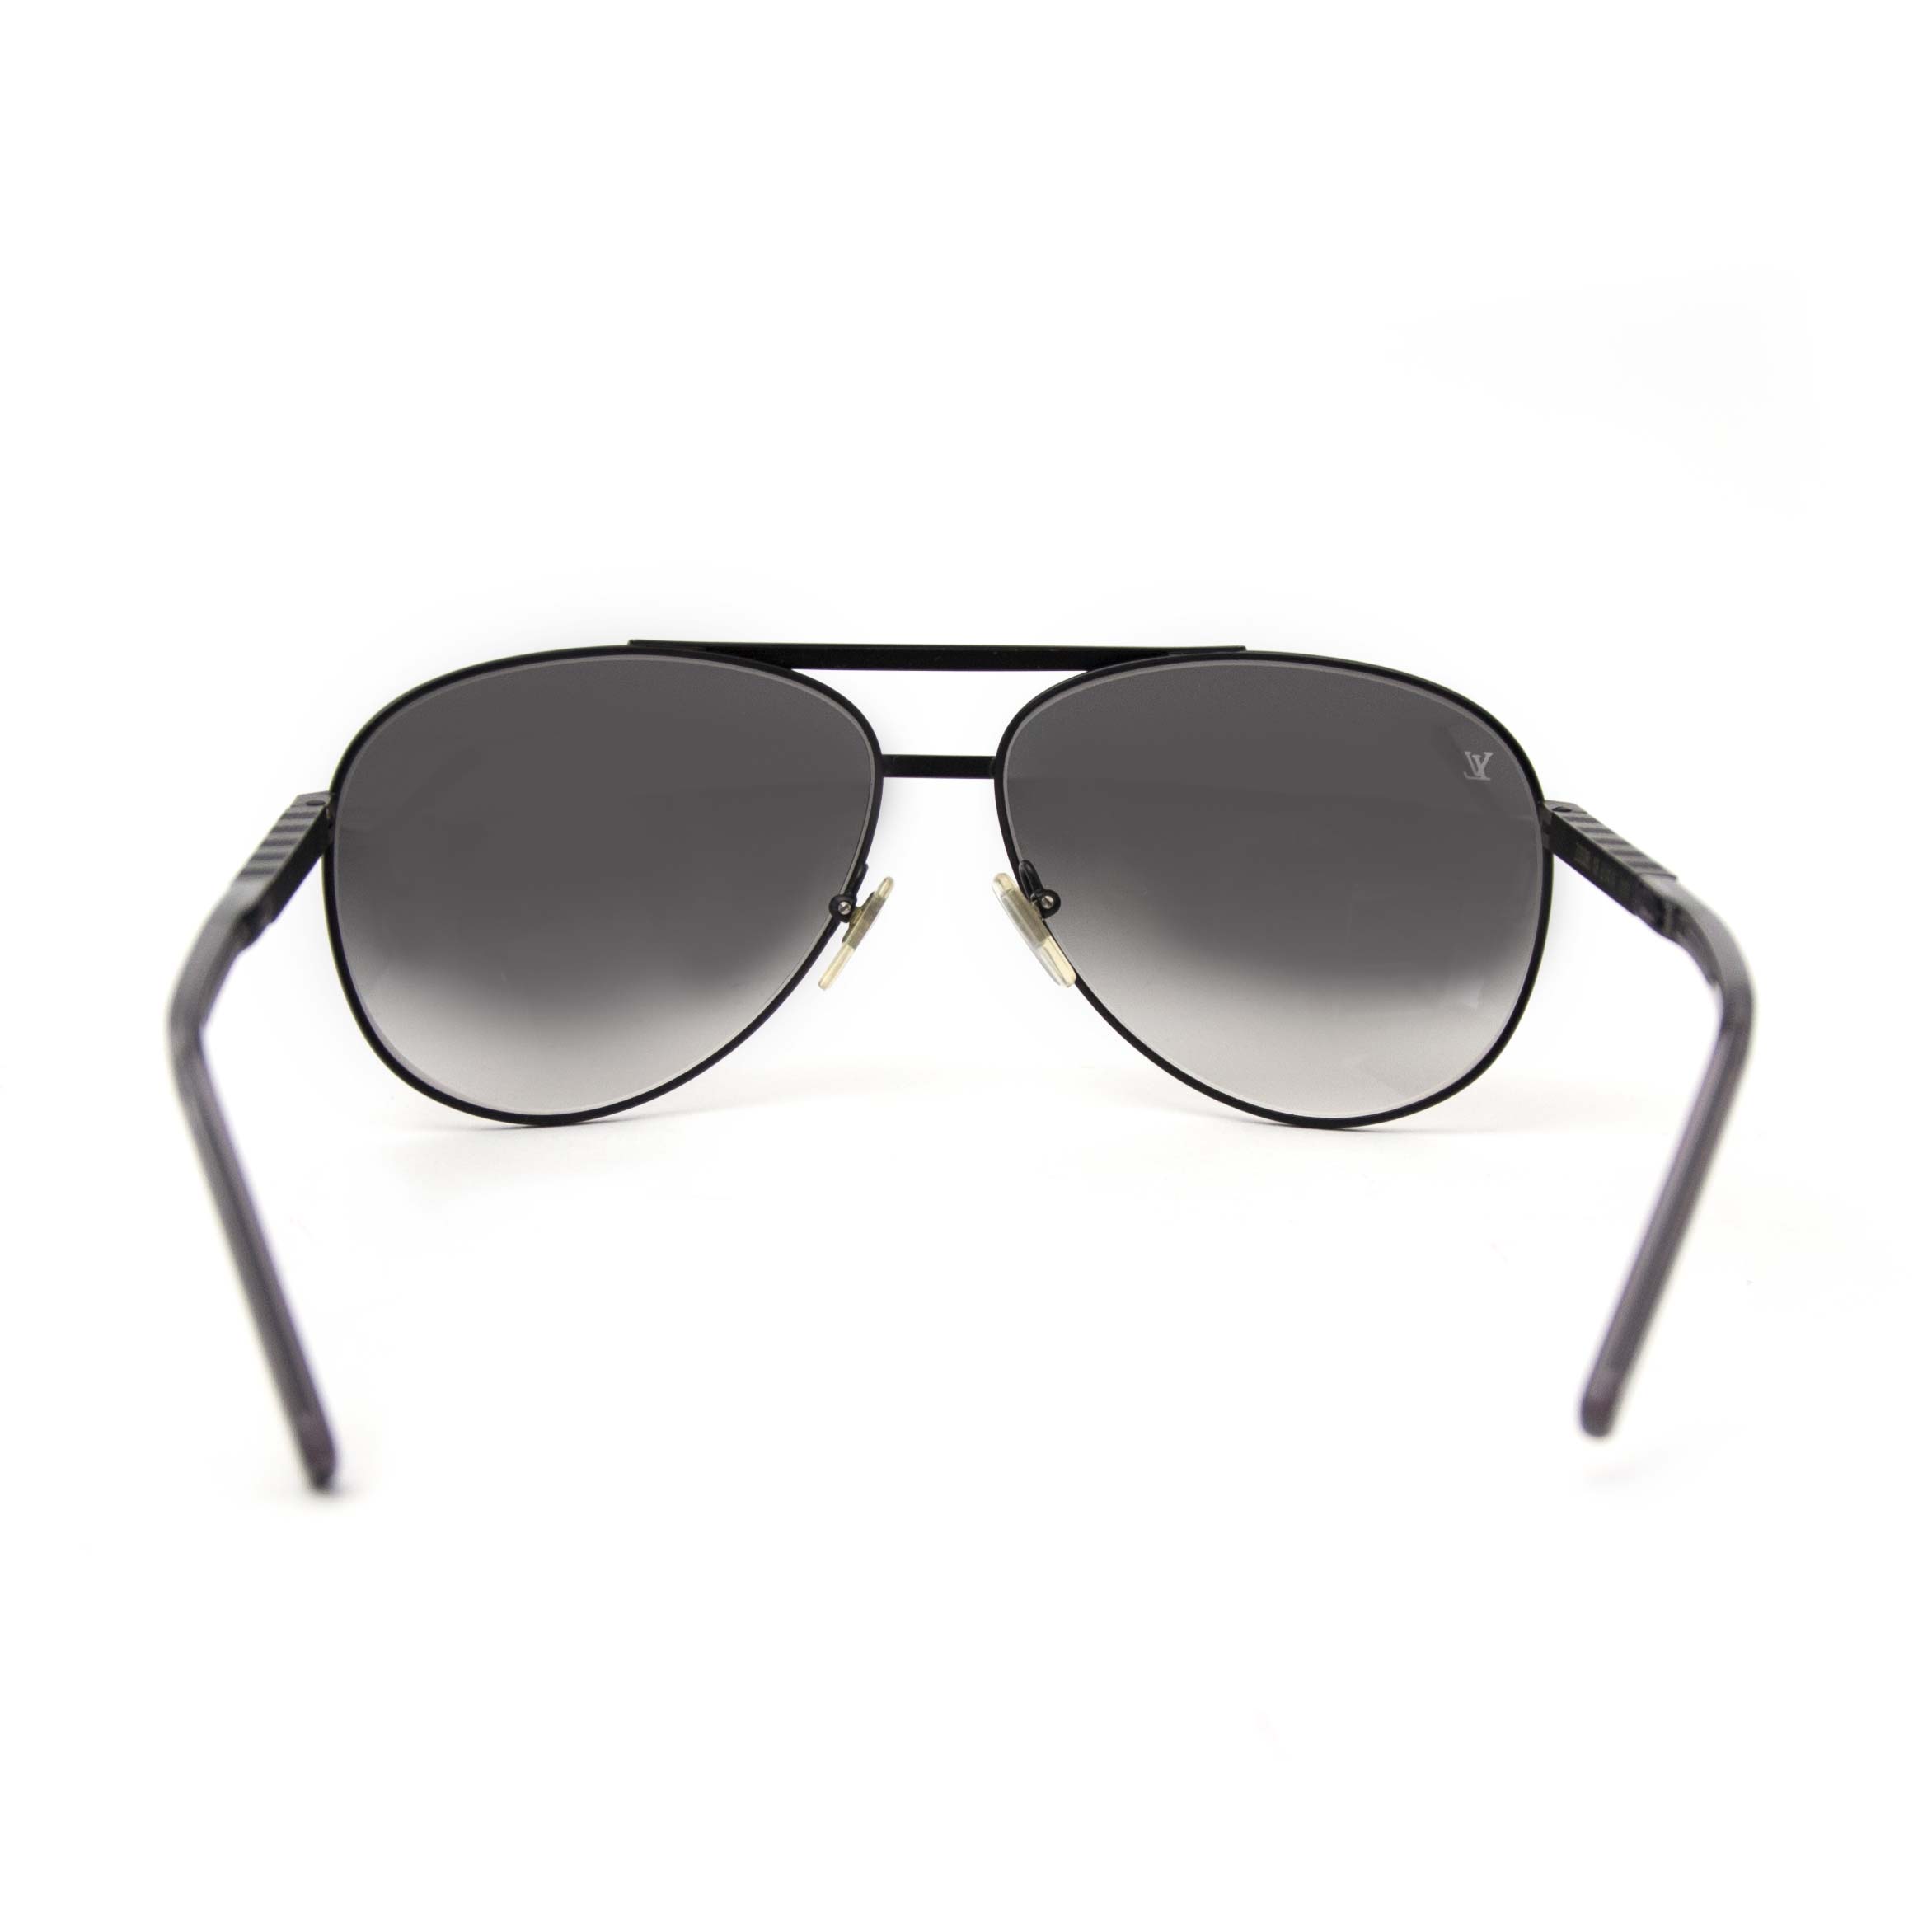 AA studio LV attitude sunglasses QC : r/DesignerReps